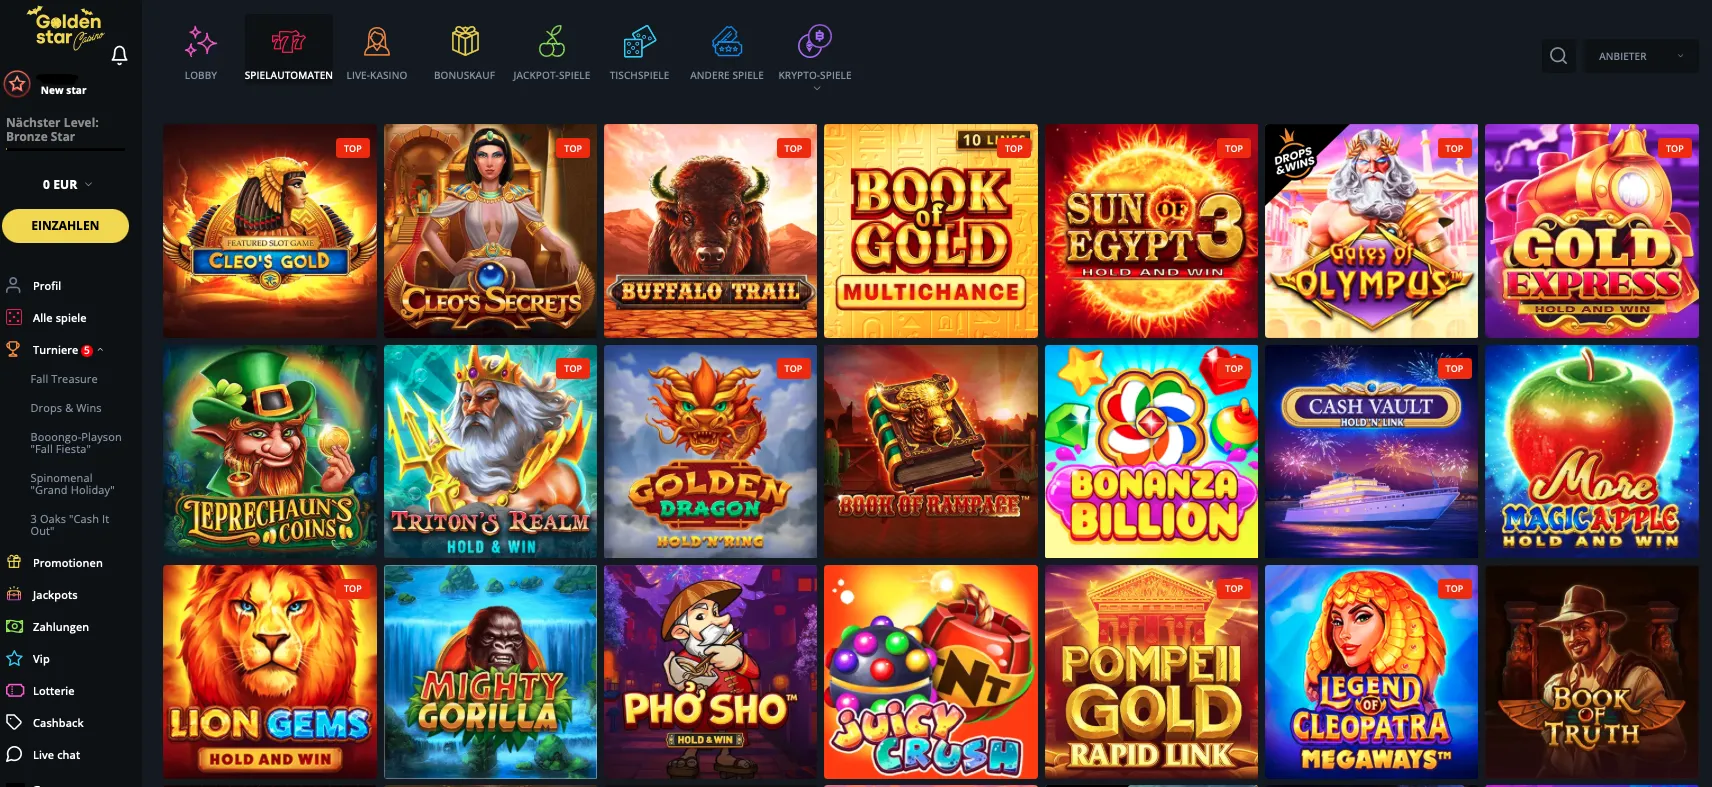 Spielen Sie Online Spielautomaten Im Golden Star